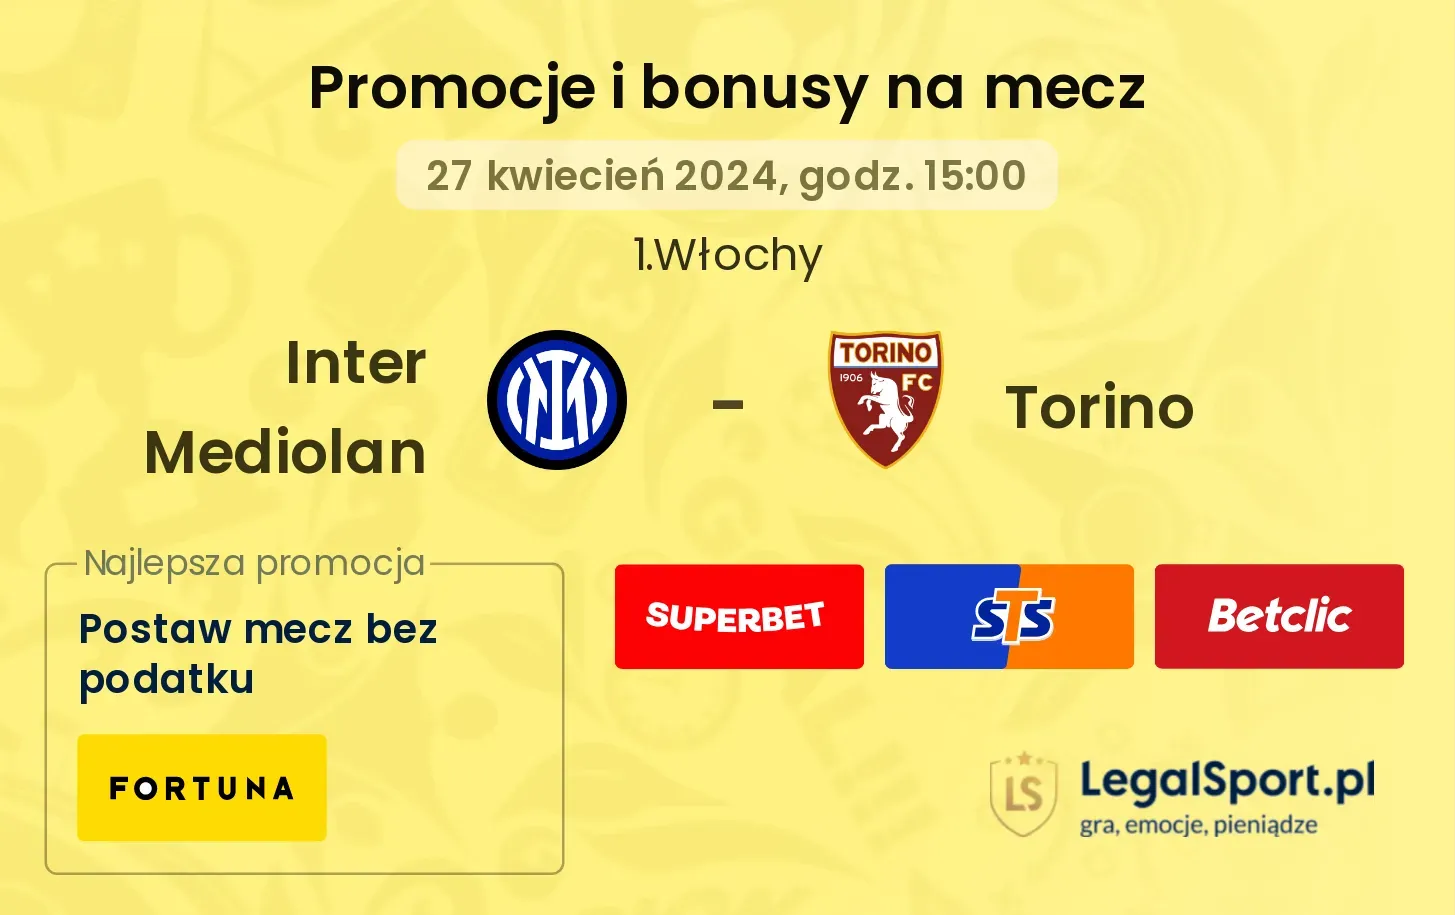 Inter Mediolan - Torino promocje bonusy na mecz